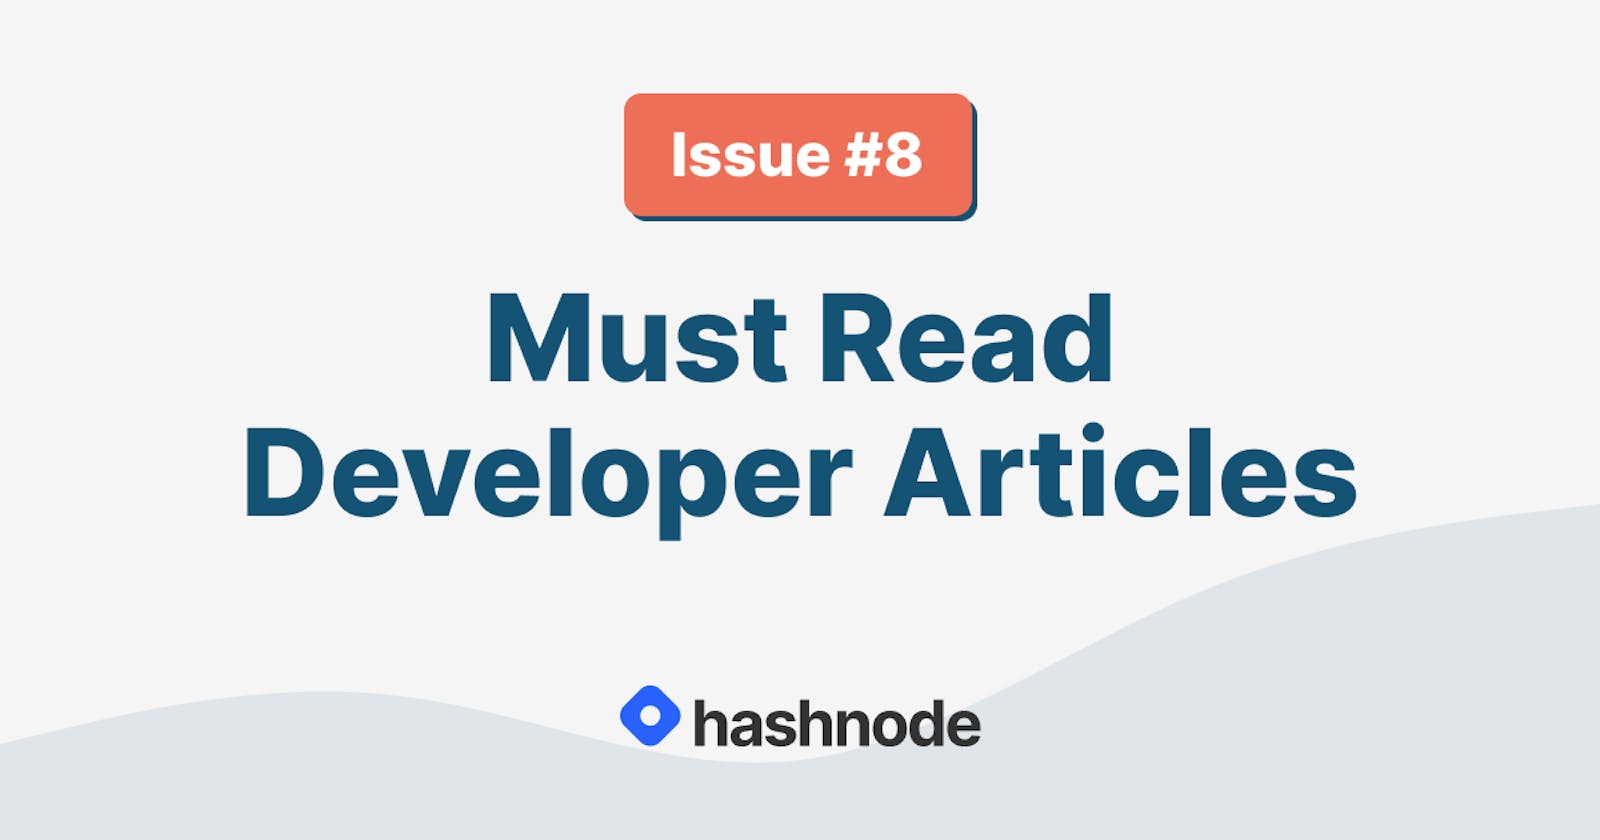 Must Read Developer Articles on Hashnode - #8